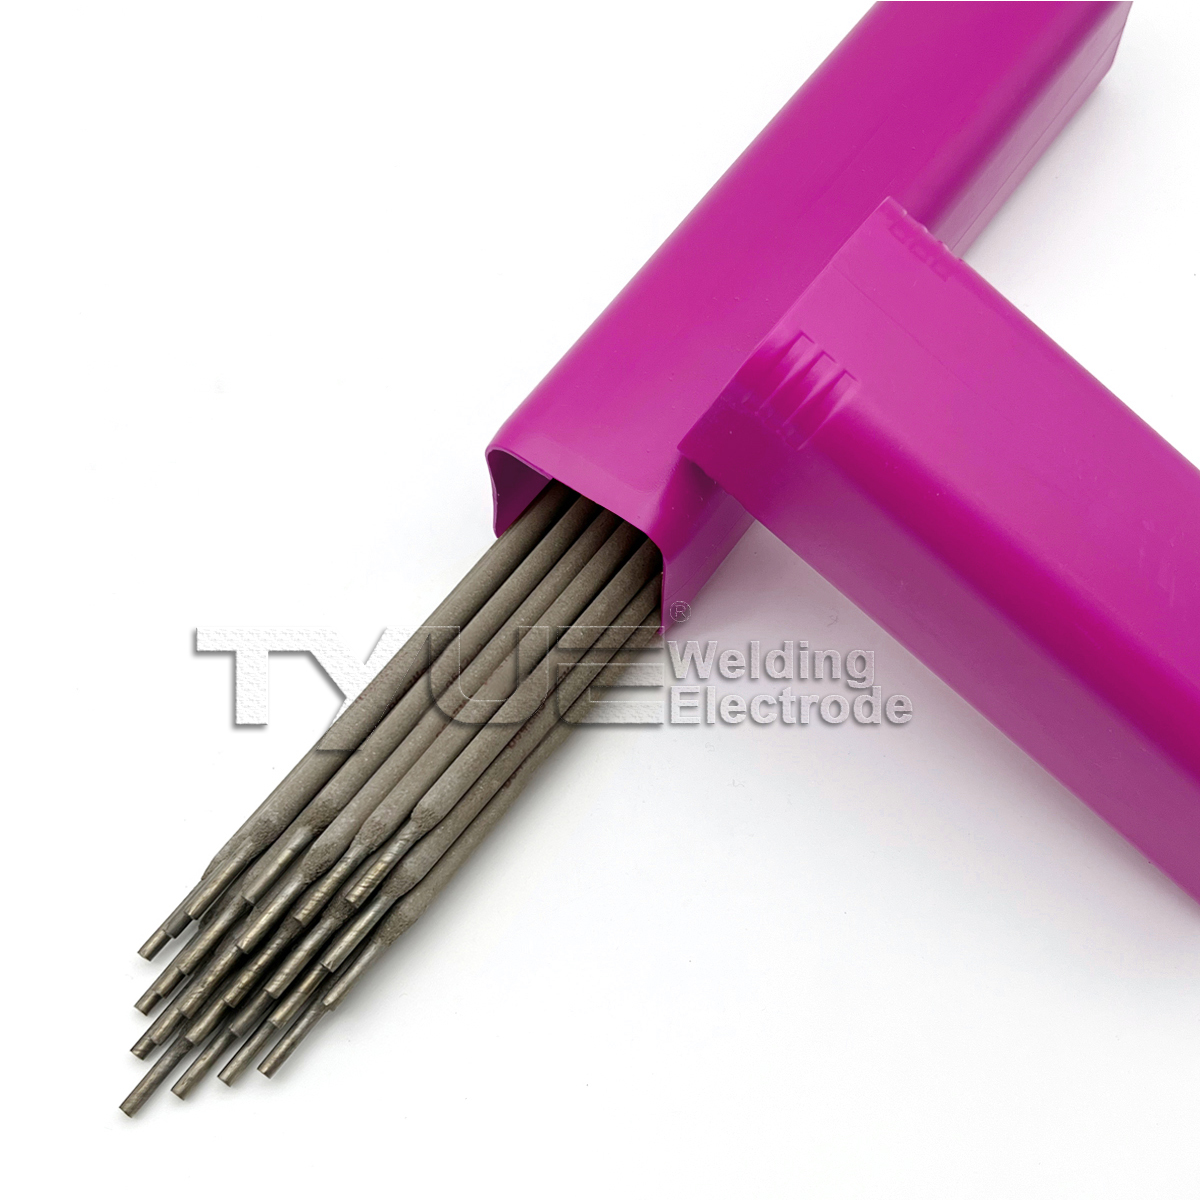 Hardfacing Wel<a href='/ding-electrode/'>ding Electrode</a> DIN 8555  (E9-UM-250-KR) Surfacing Welding Electrode, Stick Welding Rods